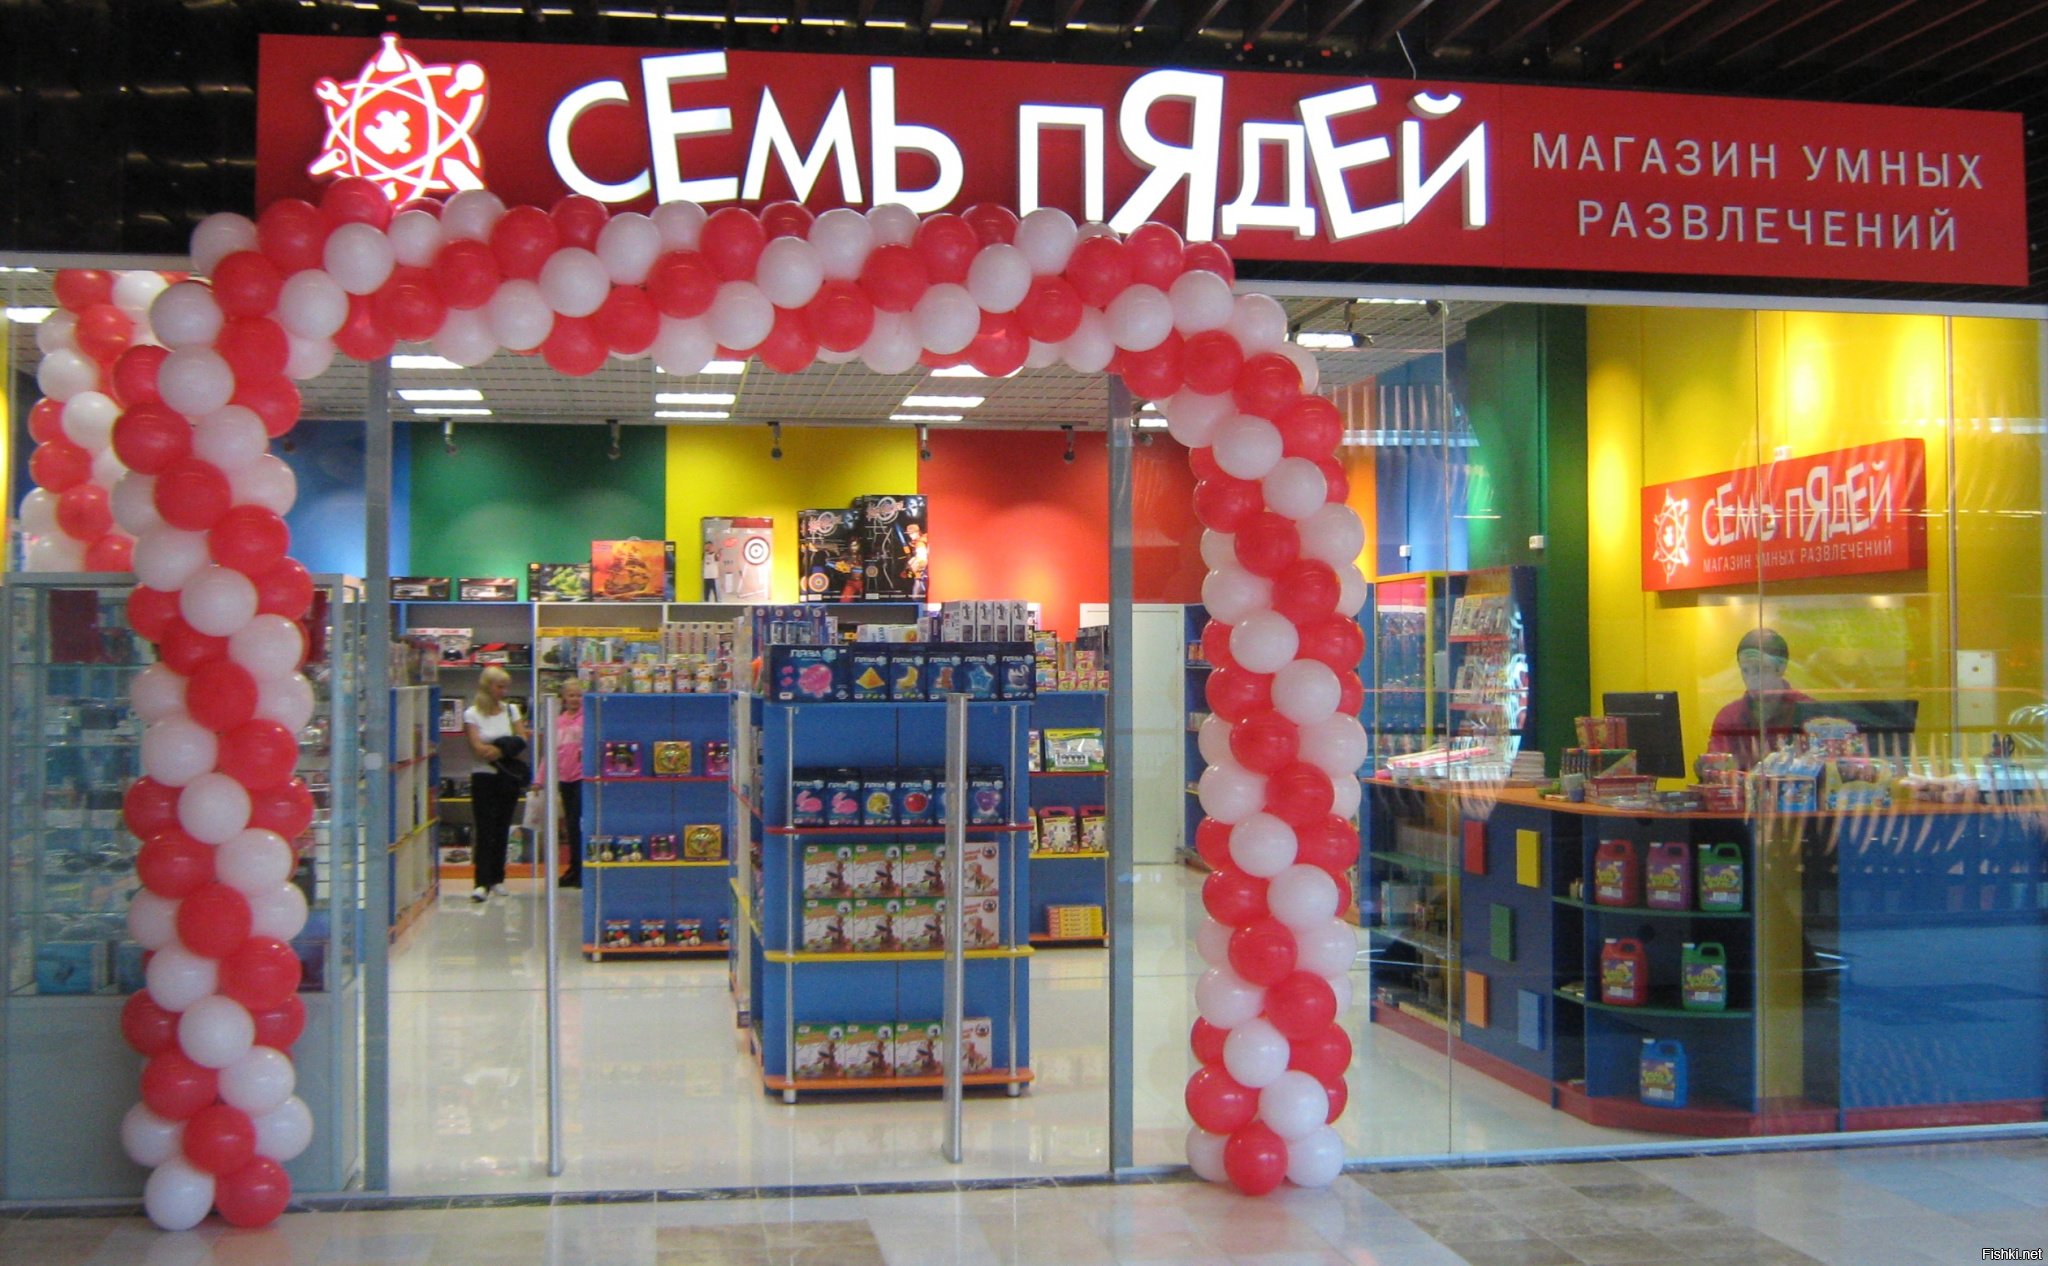 Магазин развлечений. 7 Пядей магазин. Магазин семь пядей в Москве. Семь пядей магазин умных развлечений. Магазин безумных развлечений семь.